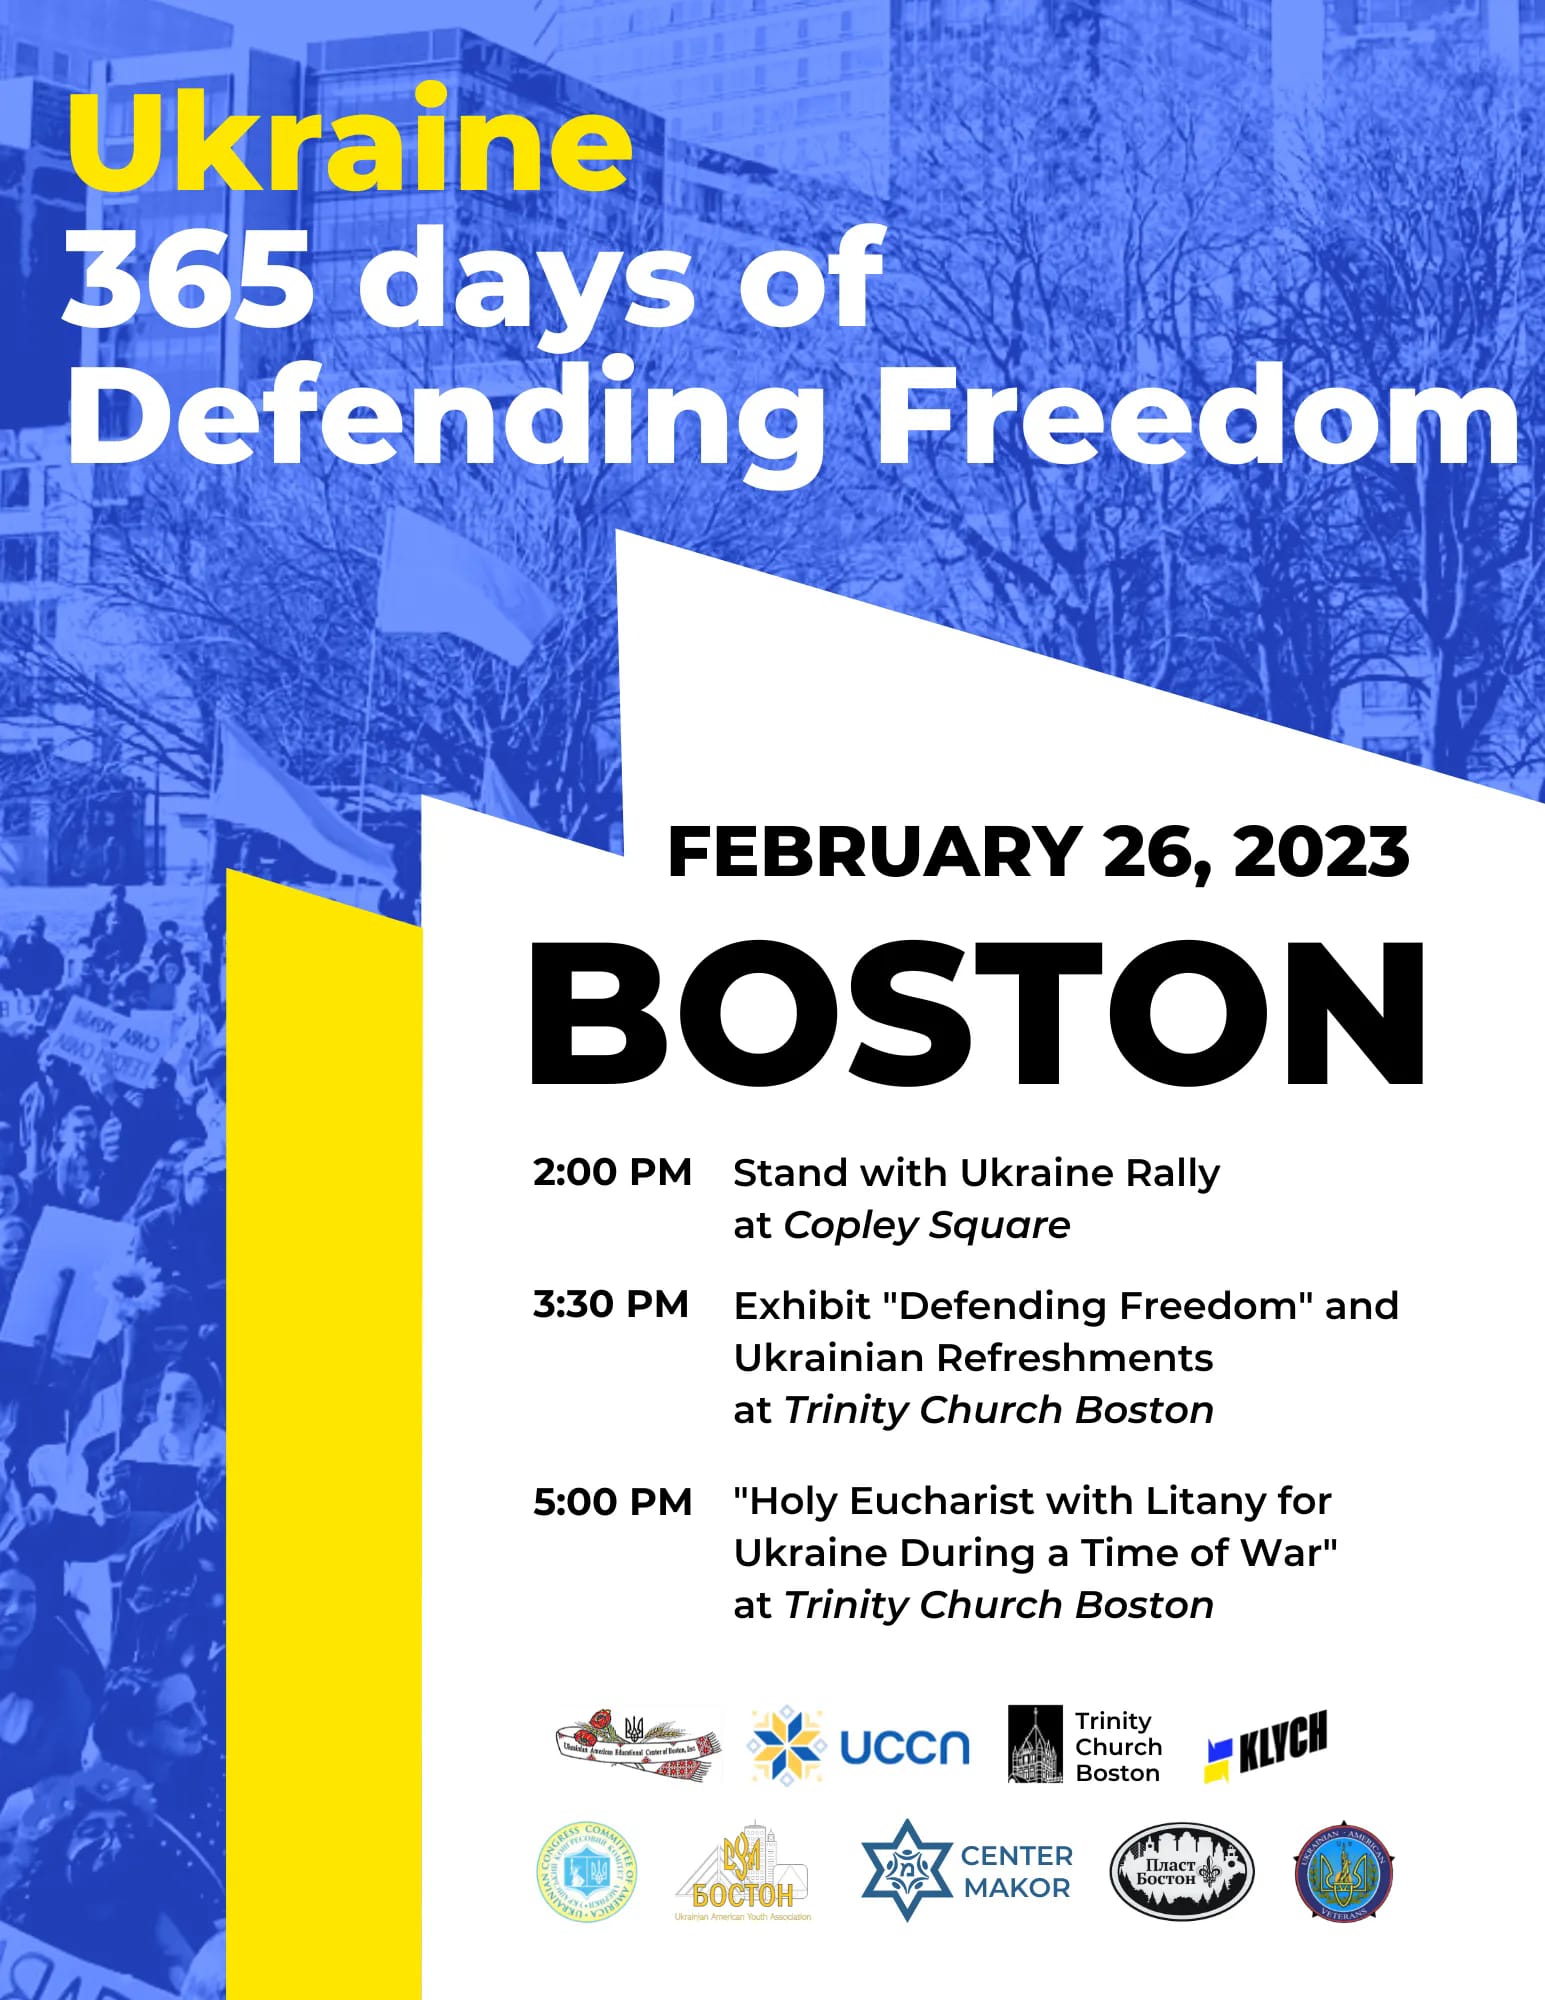 Ukraine: 365 days of Defending Freedom